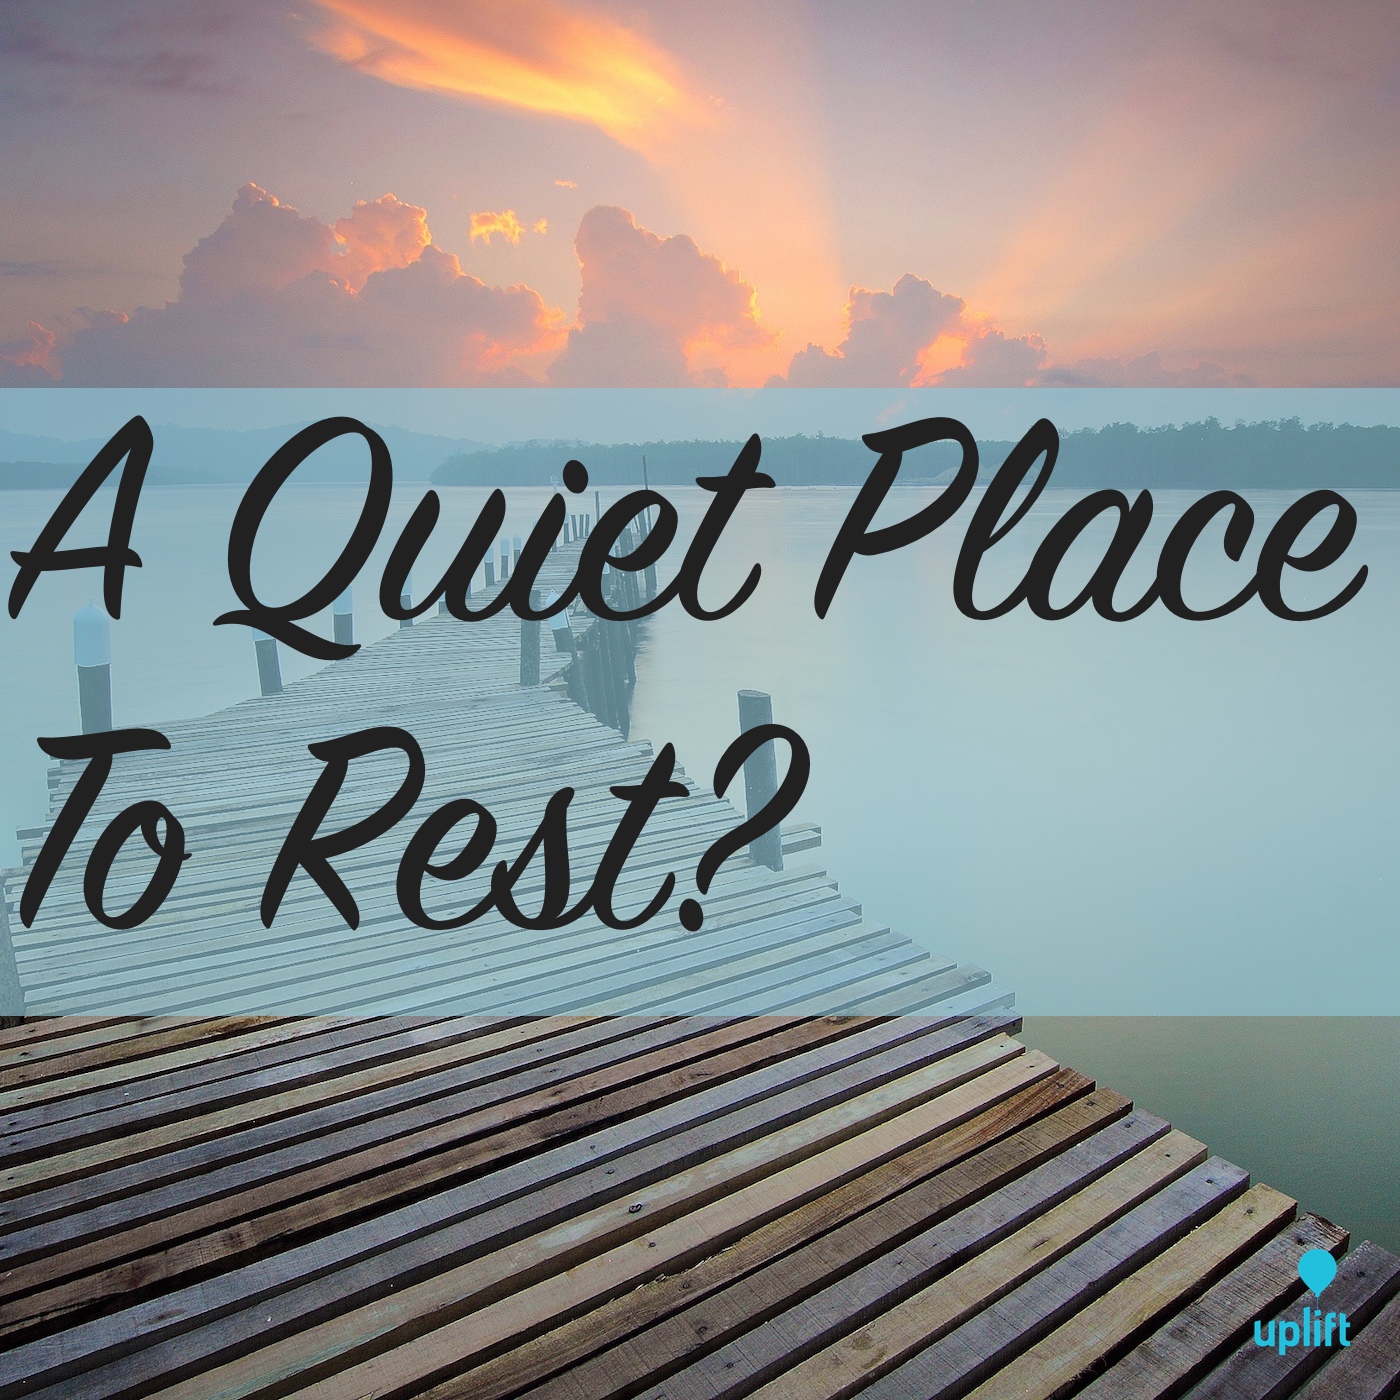 Episode 9: A Quiet Place To Rest?